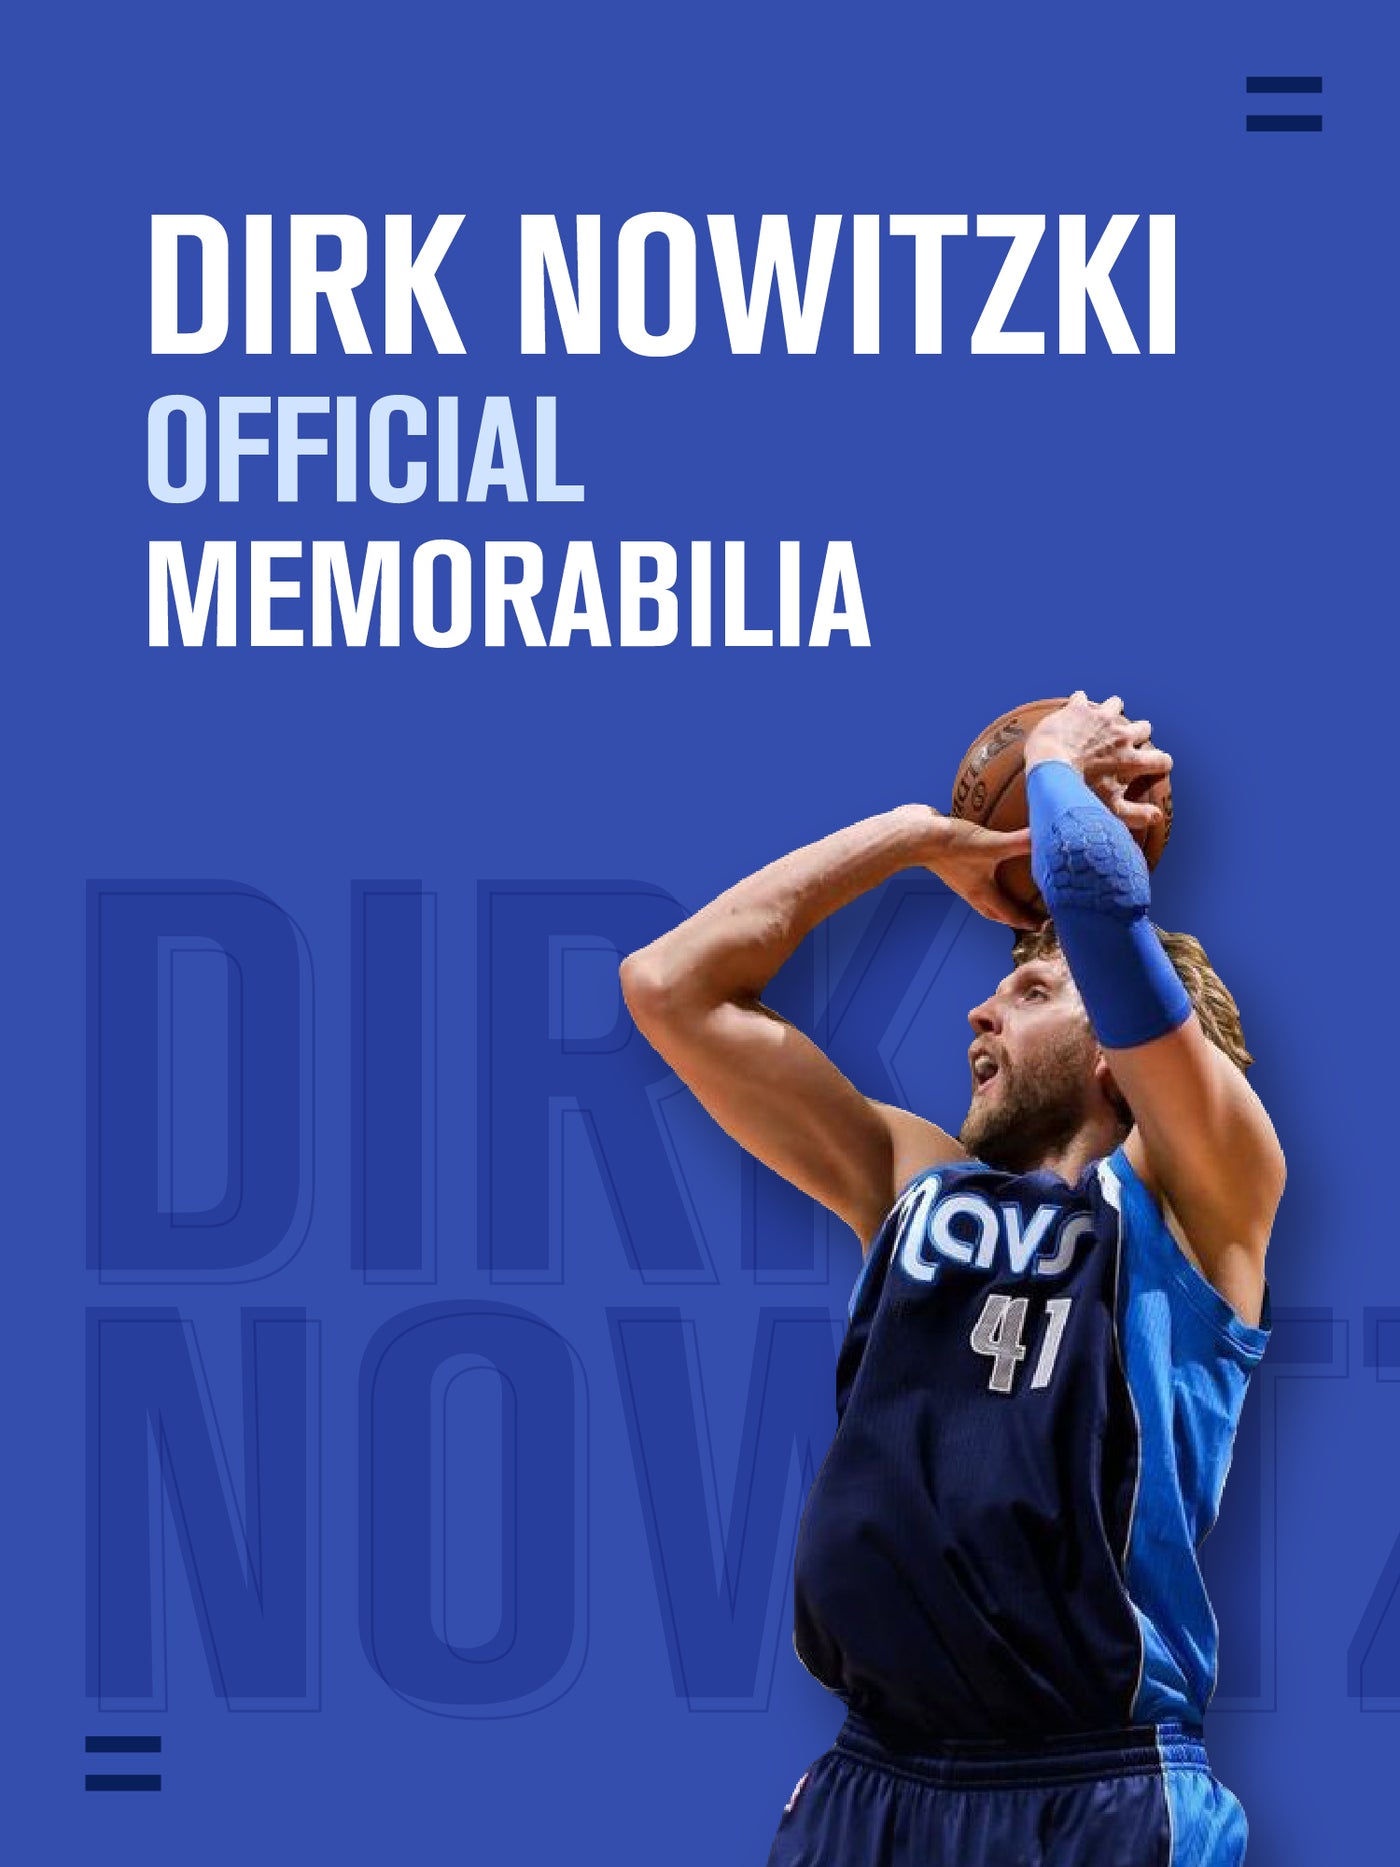 Dick Nowitzki Banner_1